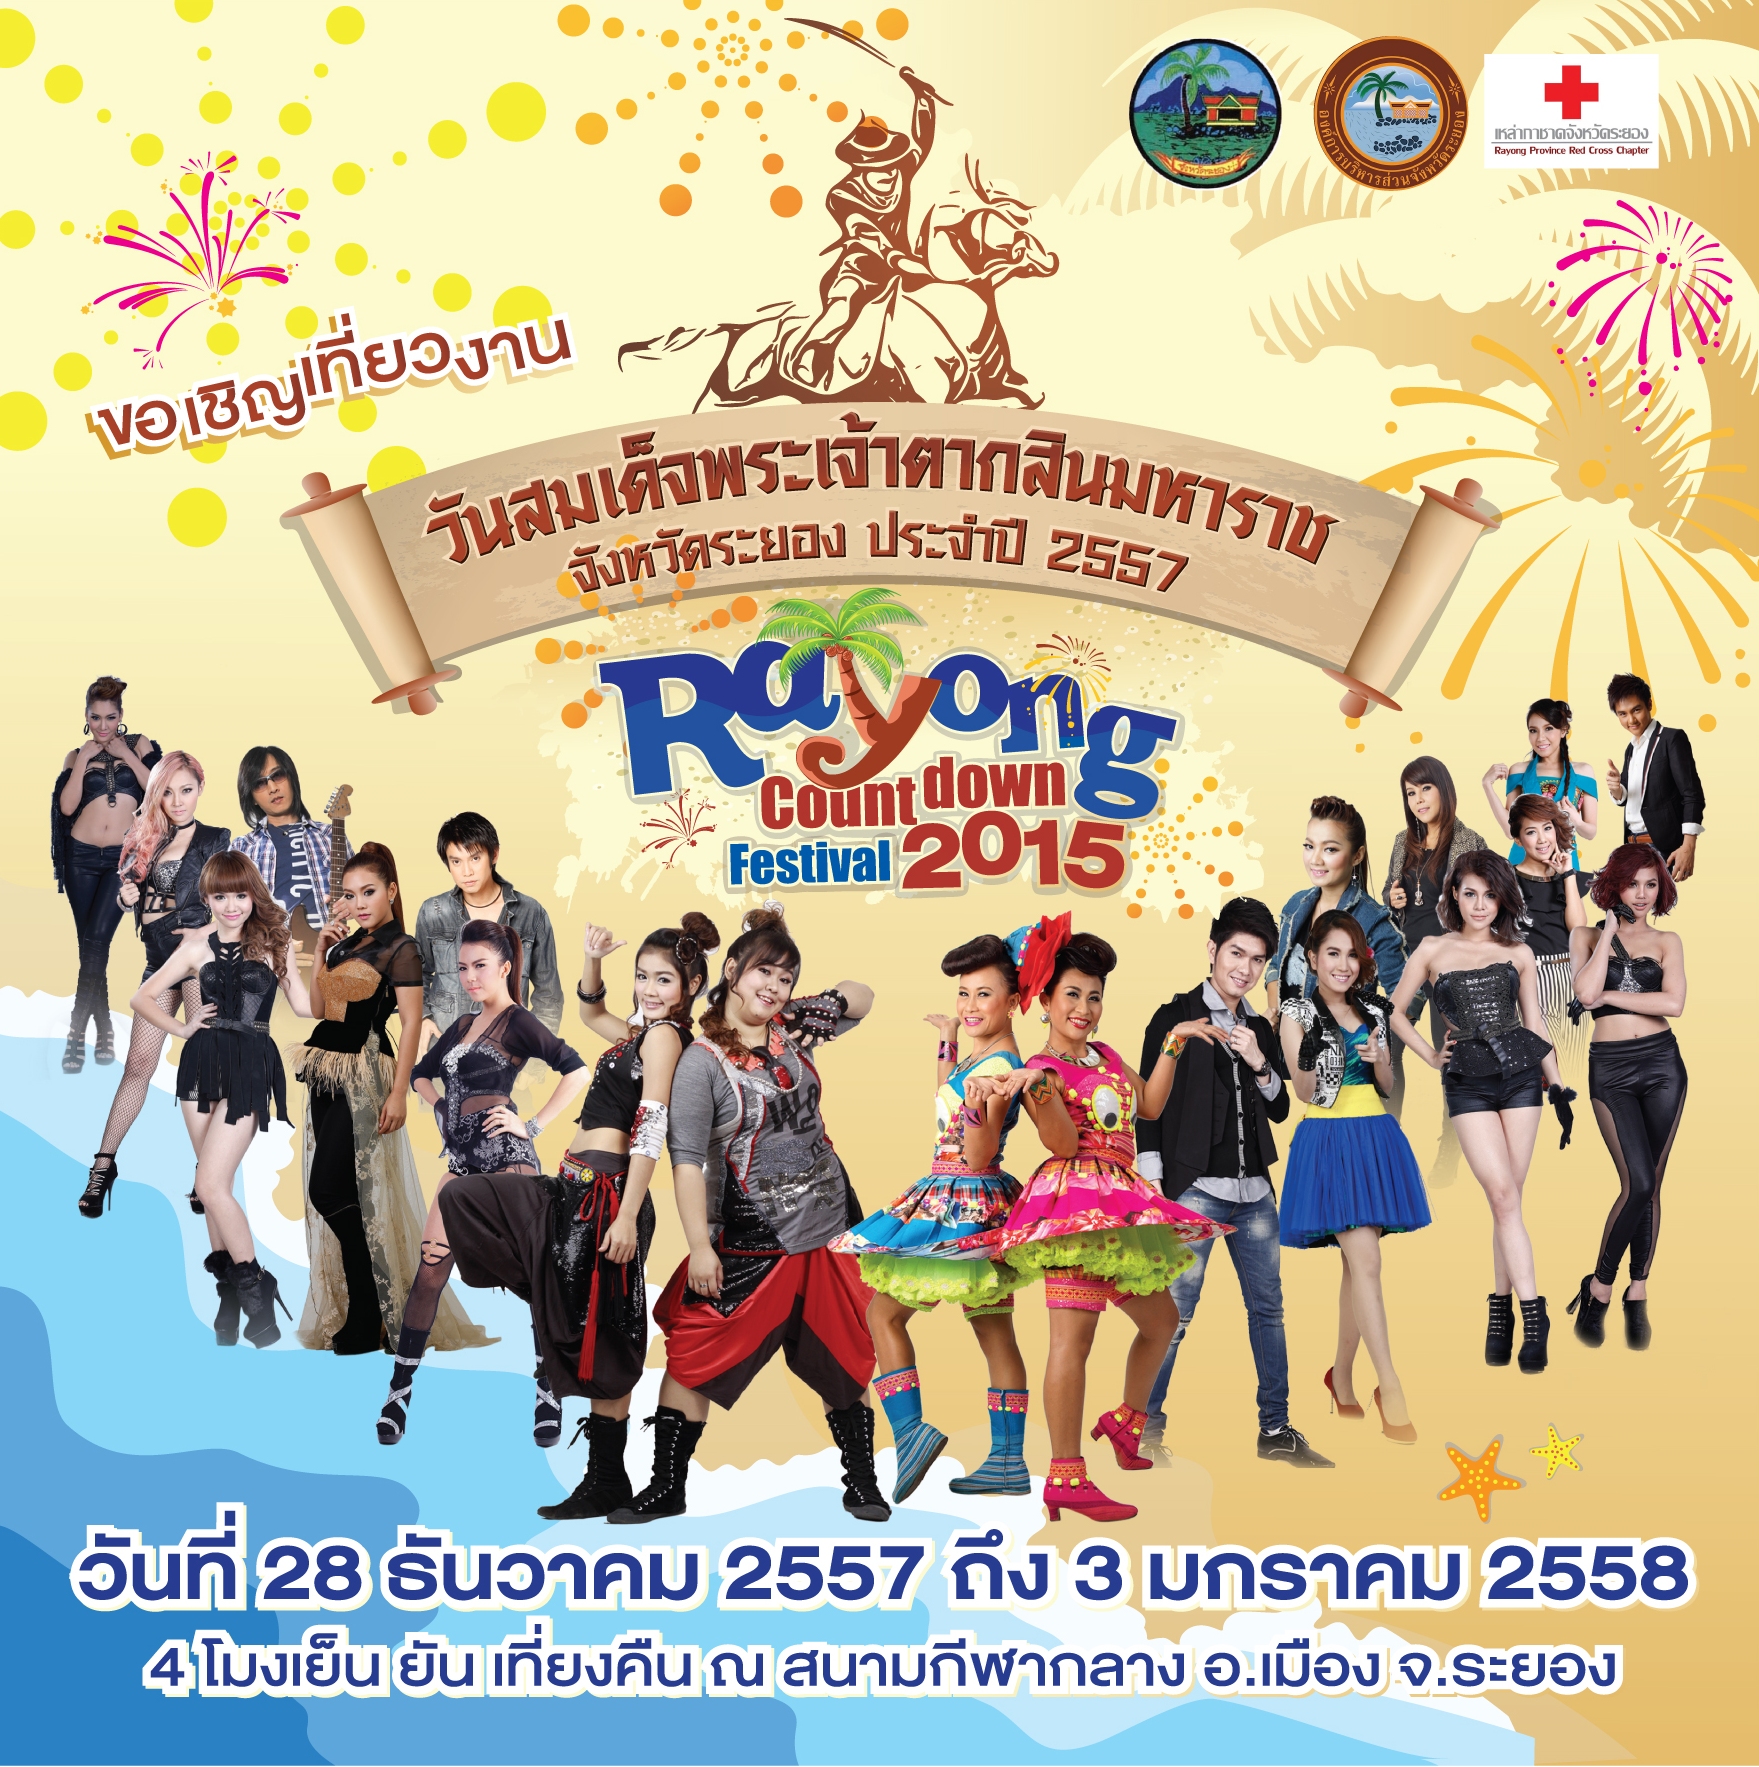 งานปีใหม่ระยอง วันสมเด็จพระเจ้าตากสินมหาราช และงาน Rayonng Countdown Festival 2015